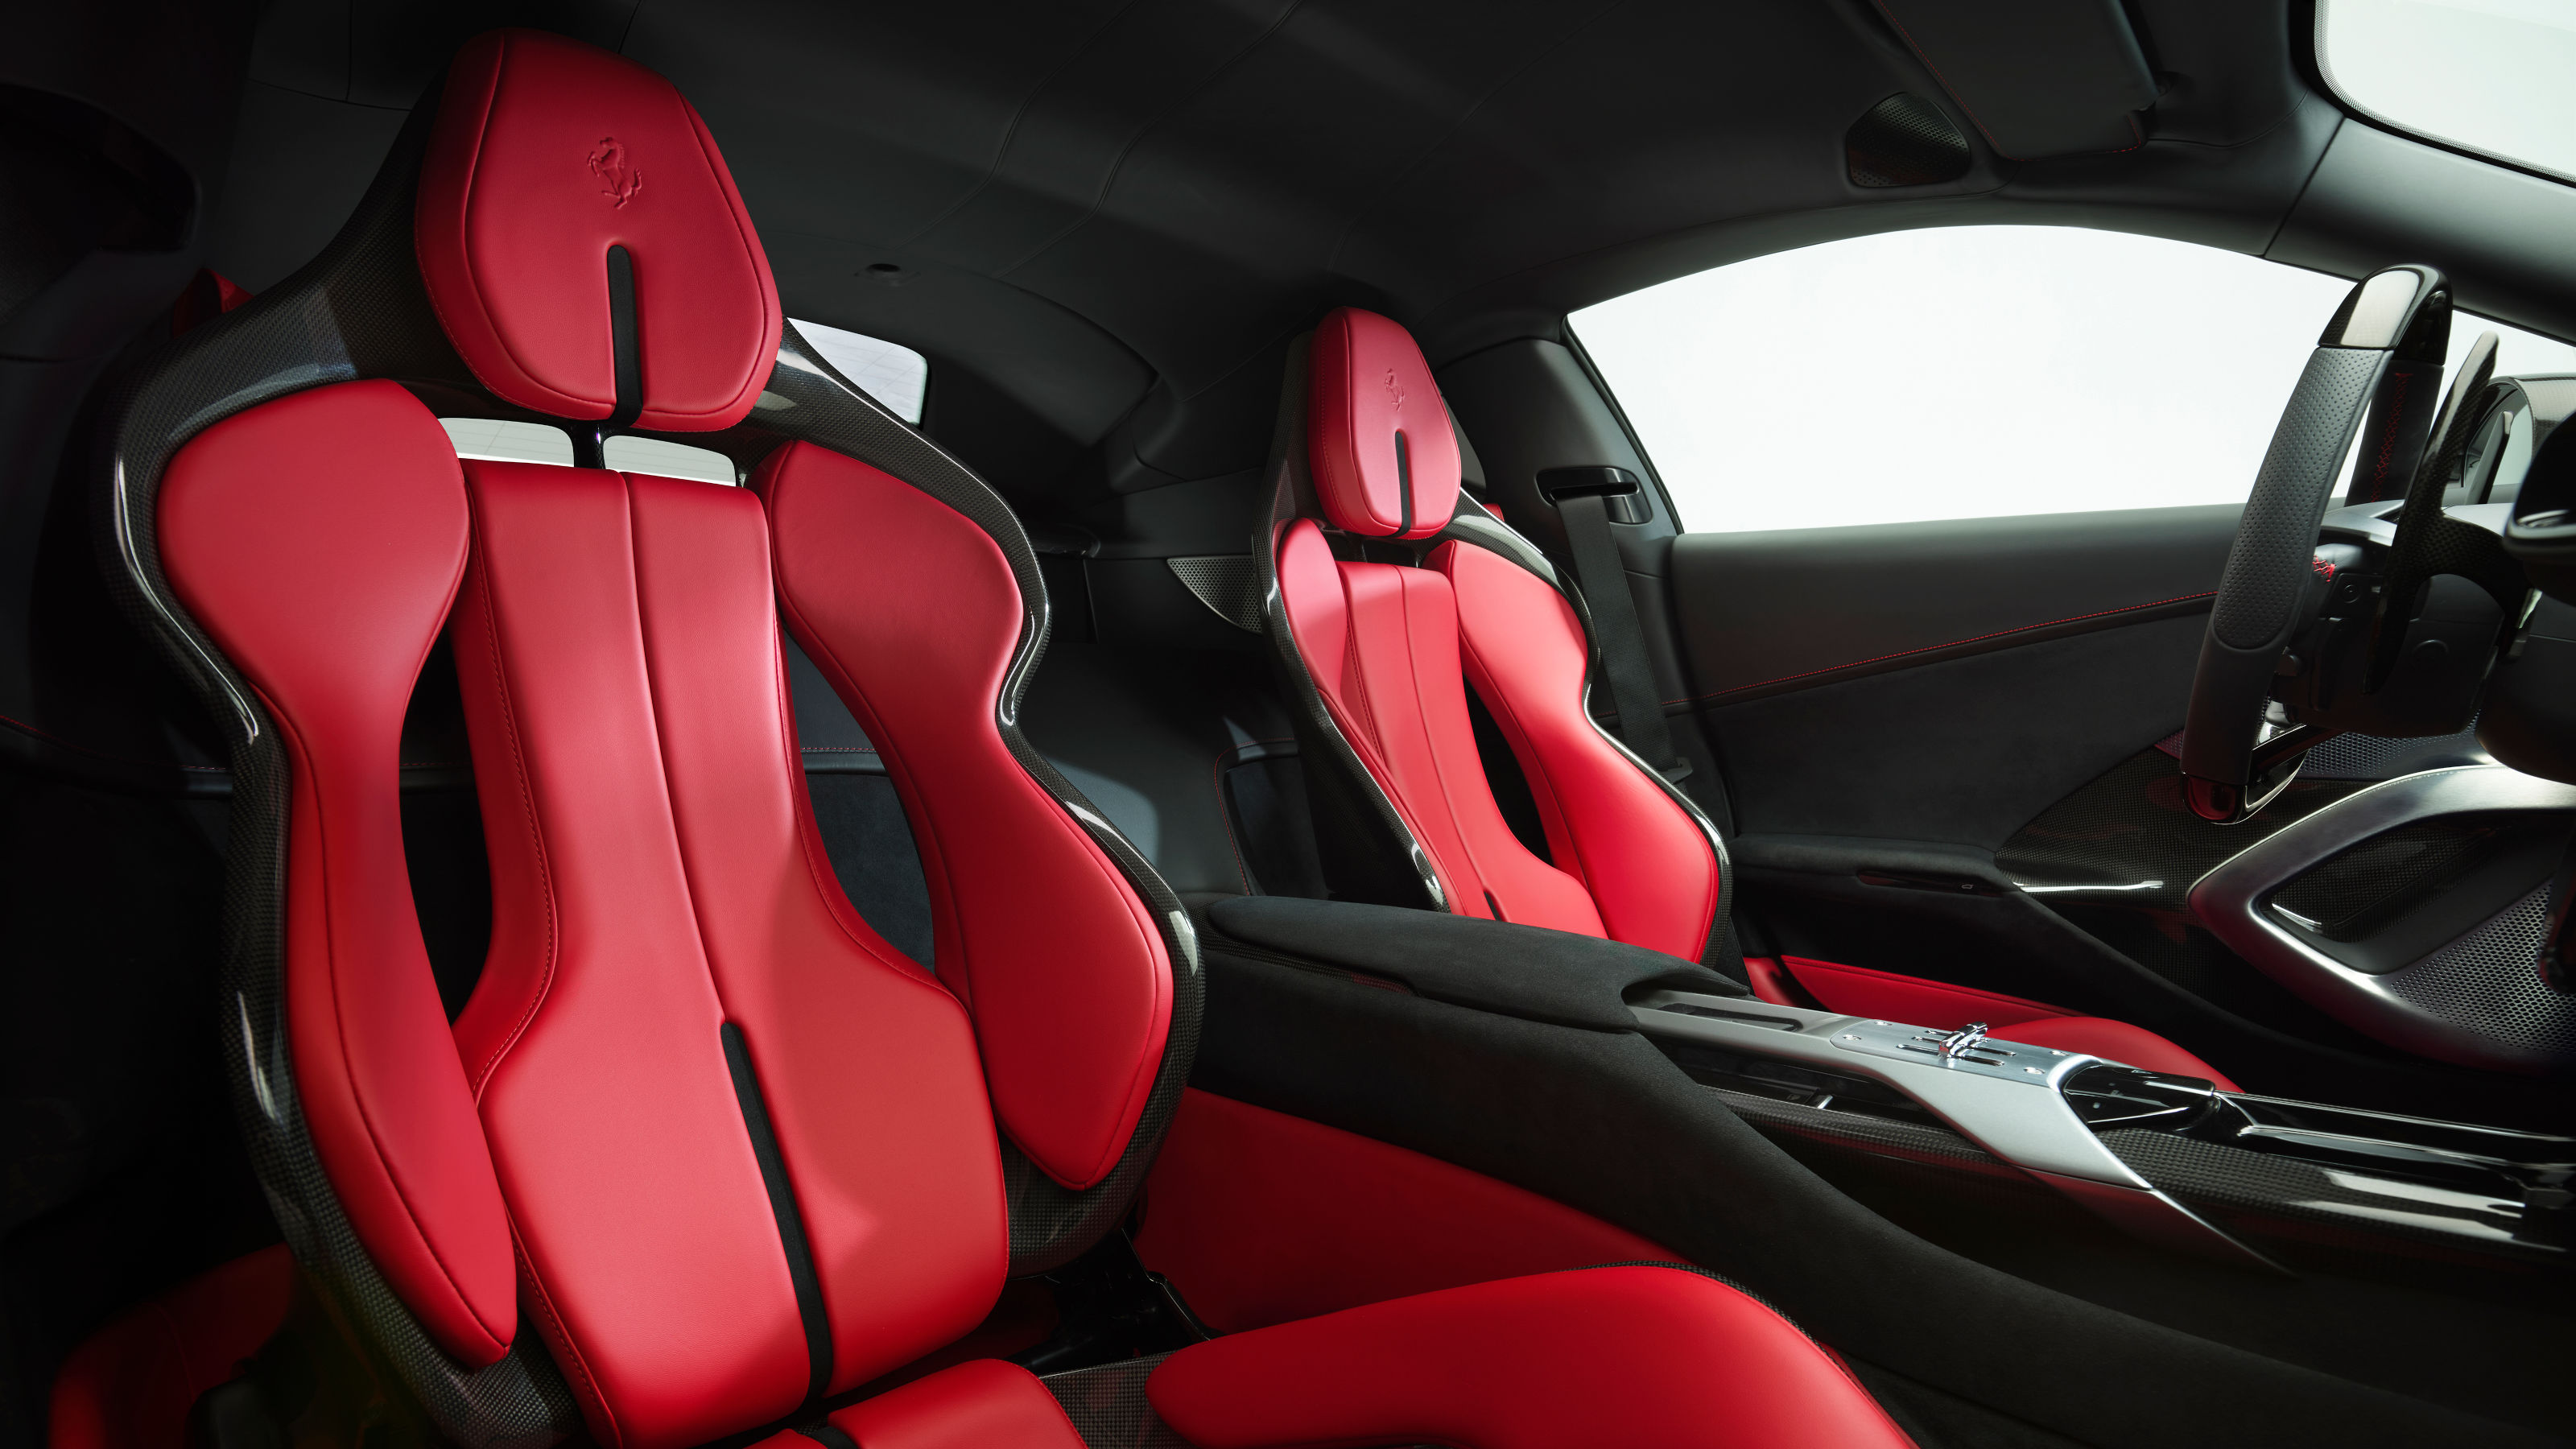 Ferrari 12Cilindri red seats